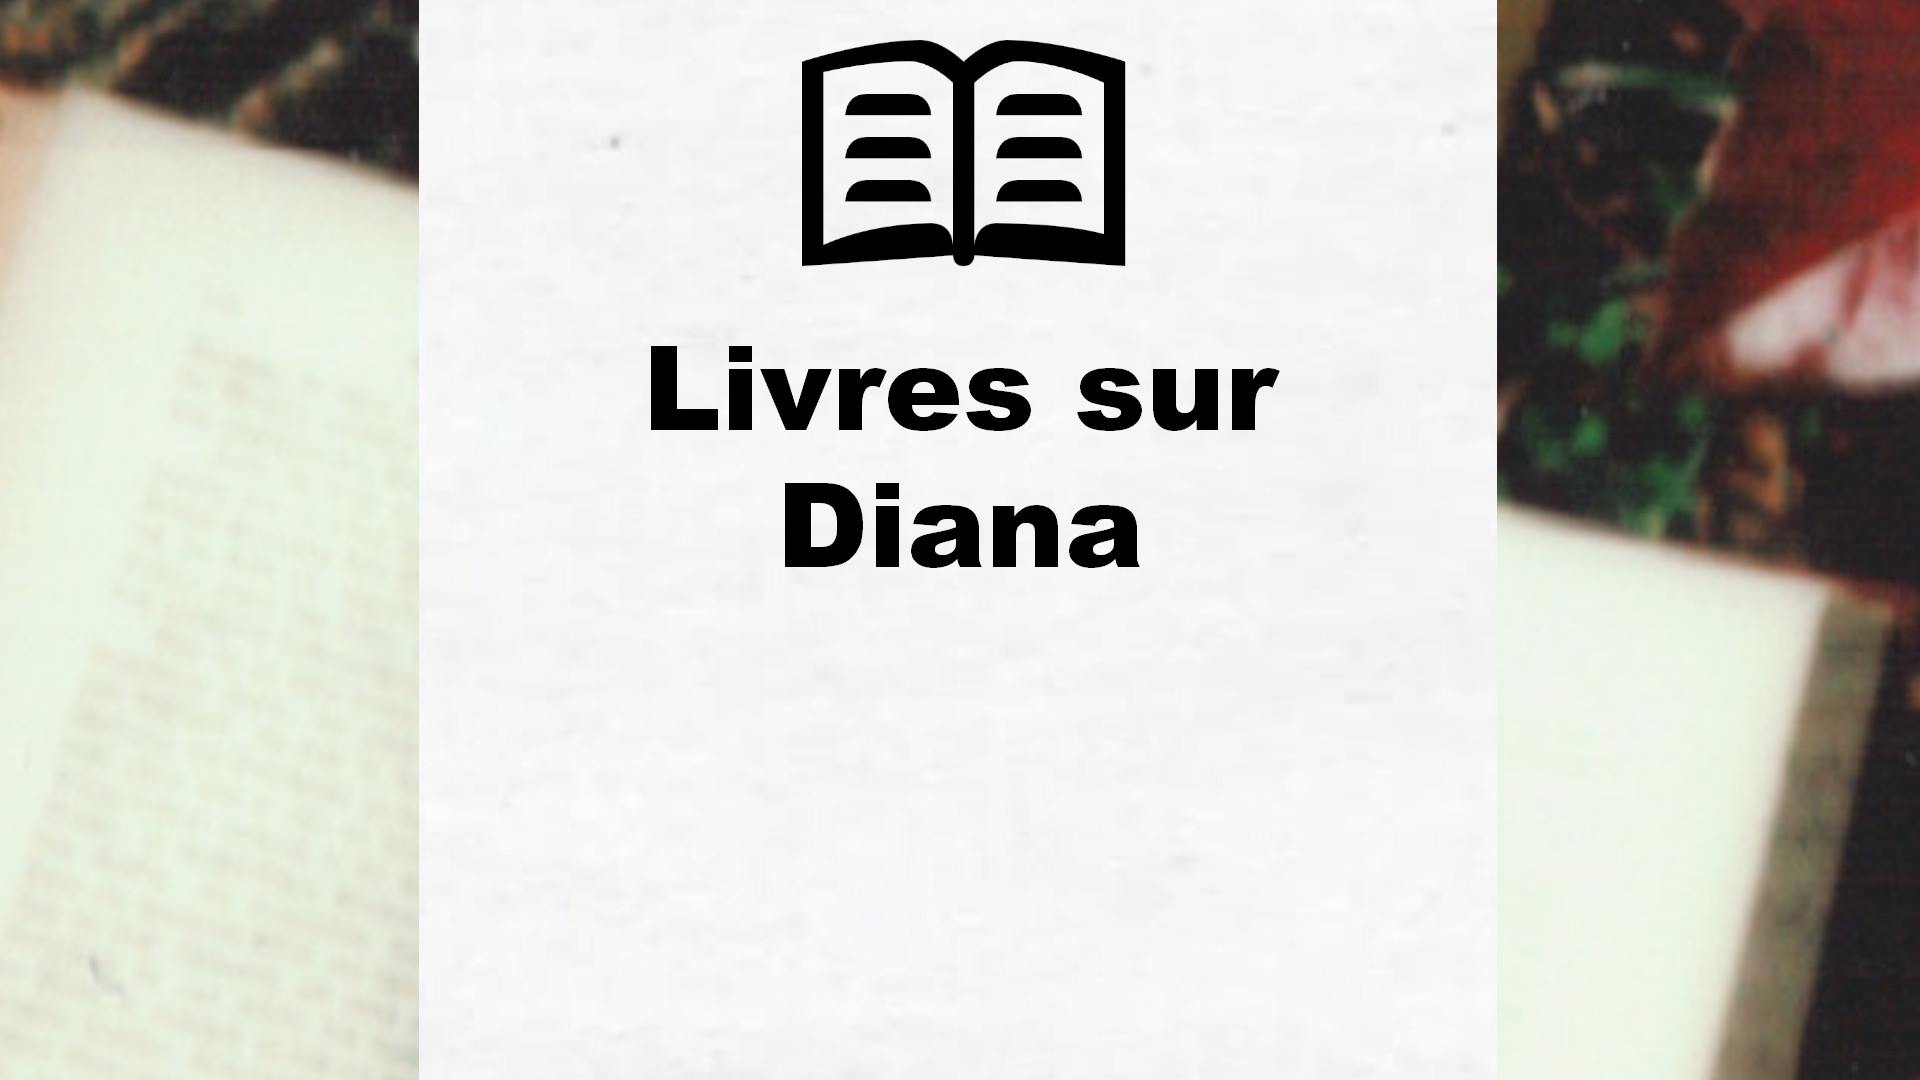 Livres sur Diana